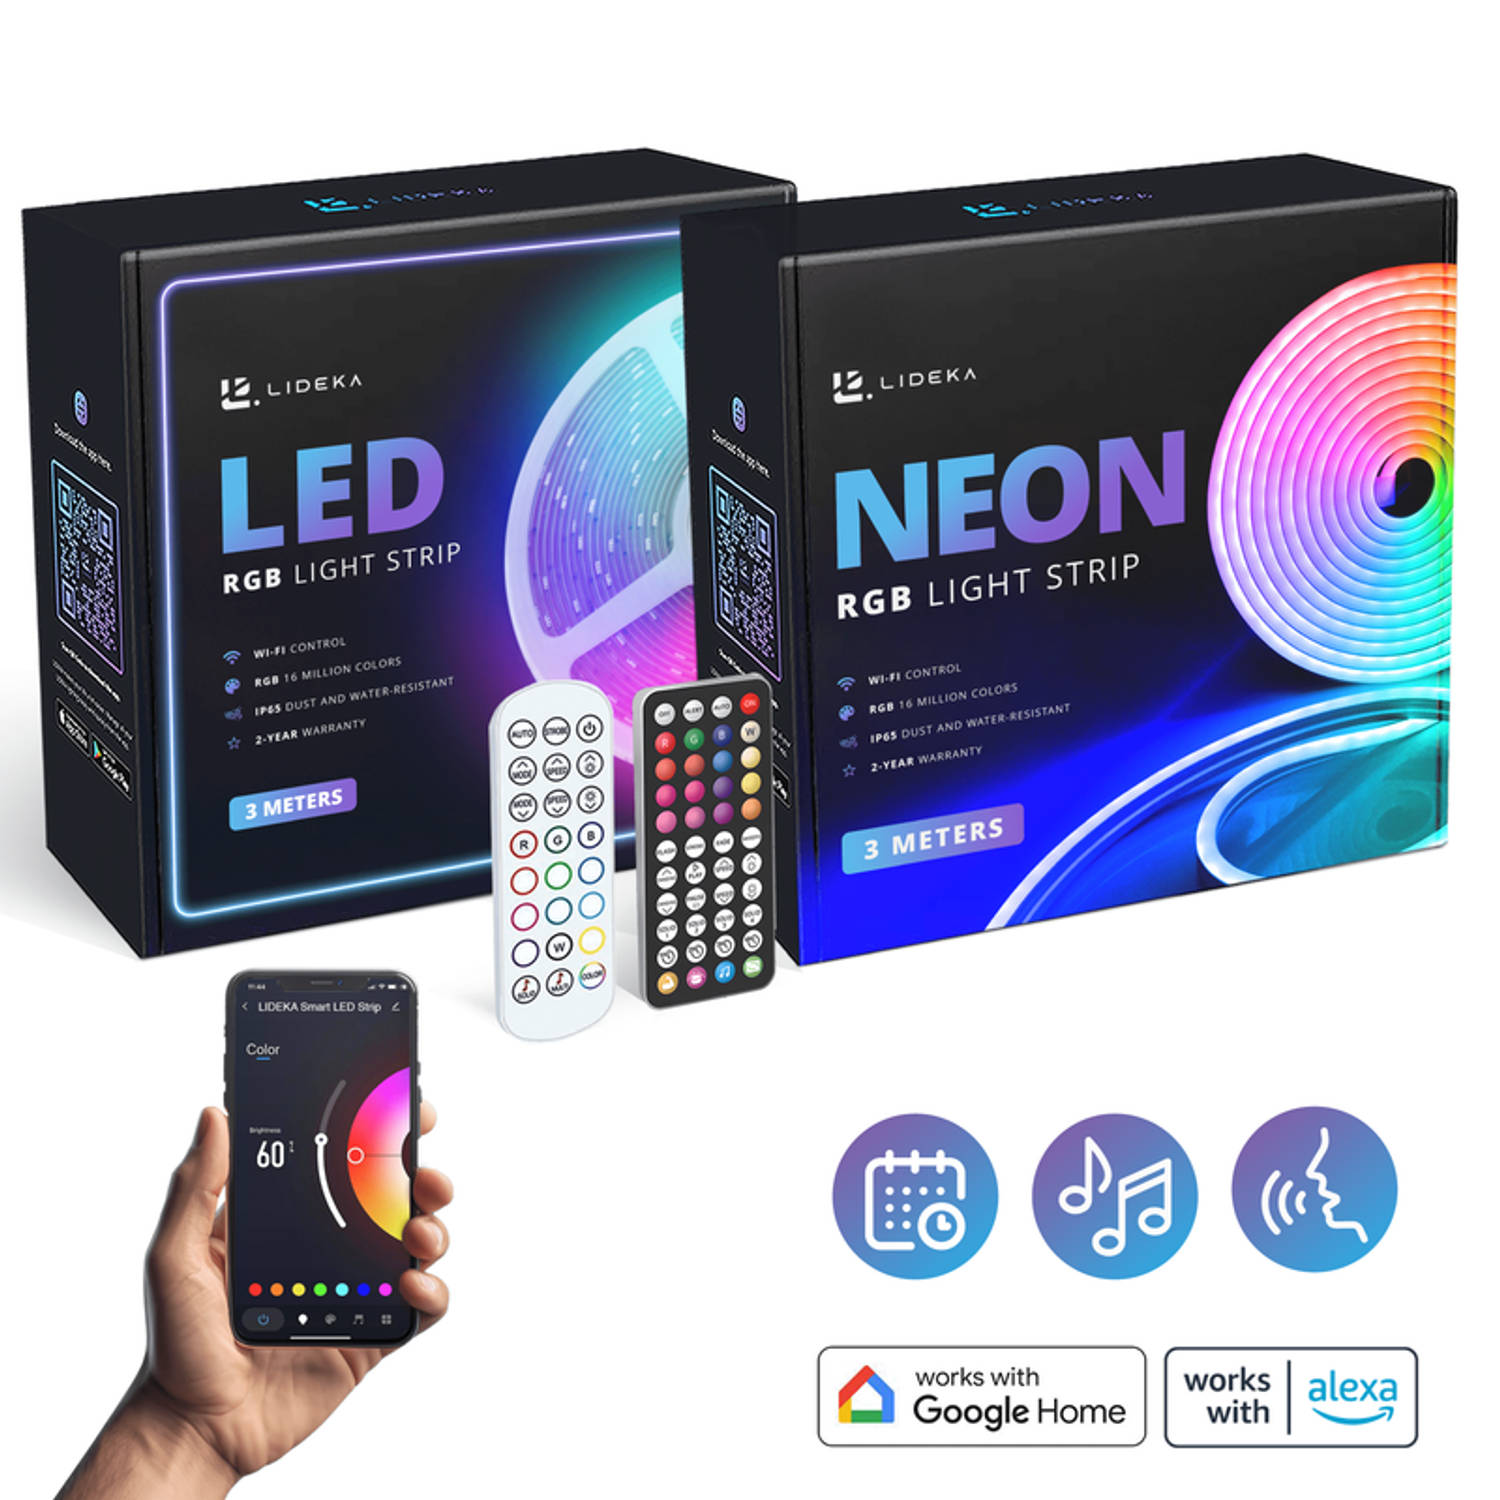 Slimme NEON RGB LED Strip 3m + RGB LED Strip 3m